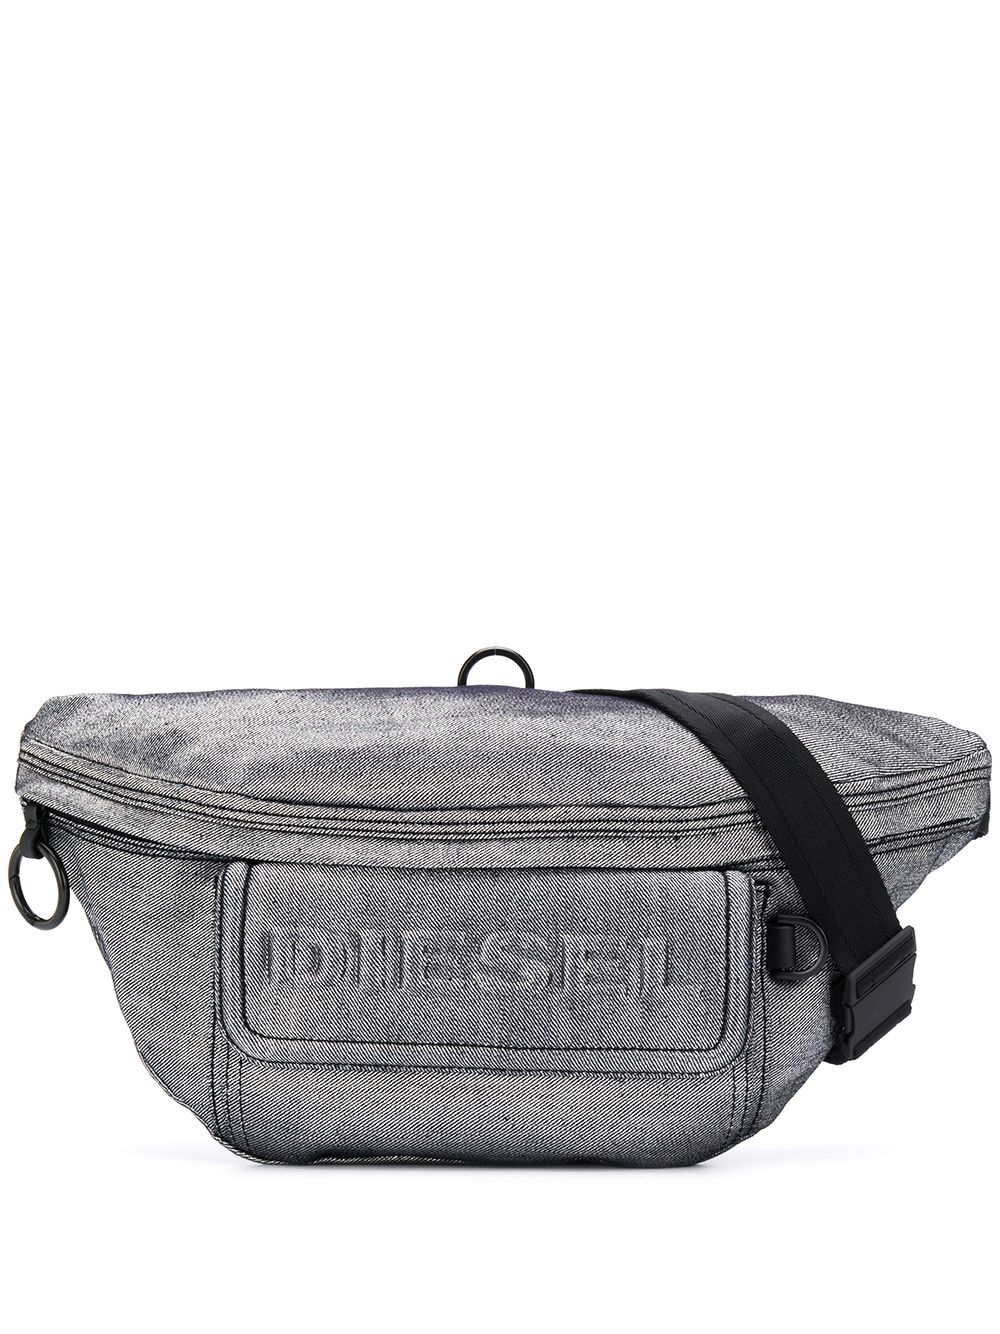 фото Diesel джинсовая поясная сумка